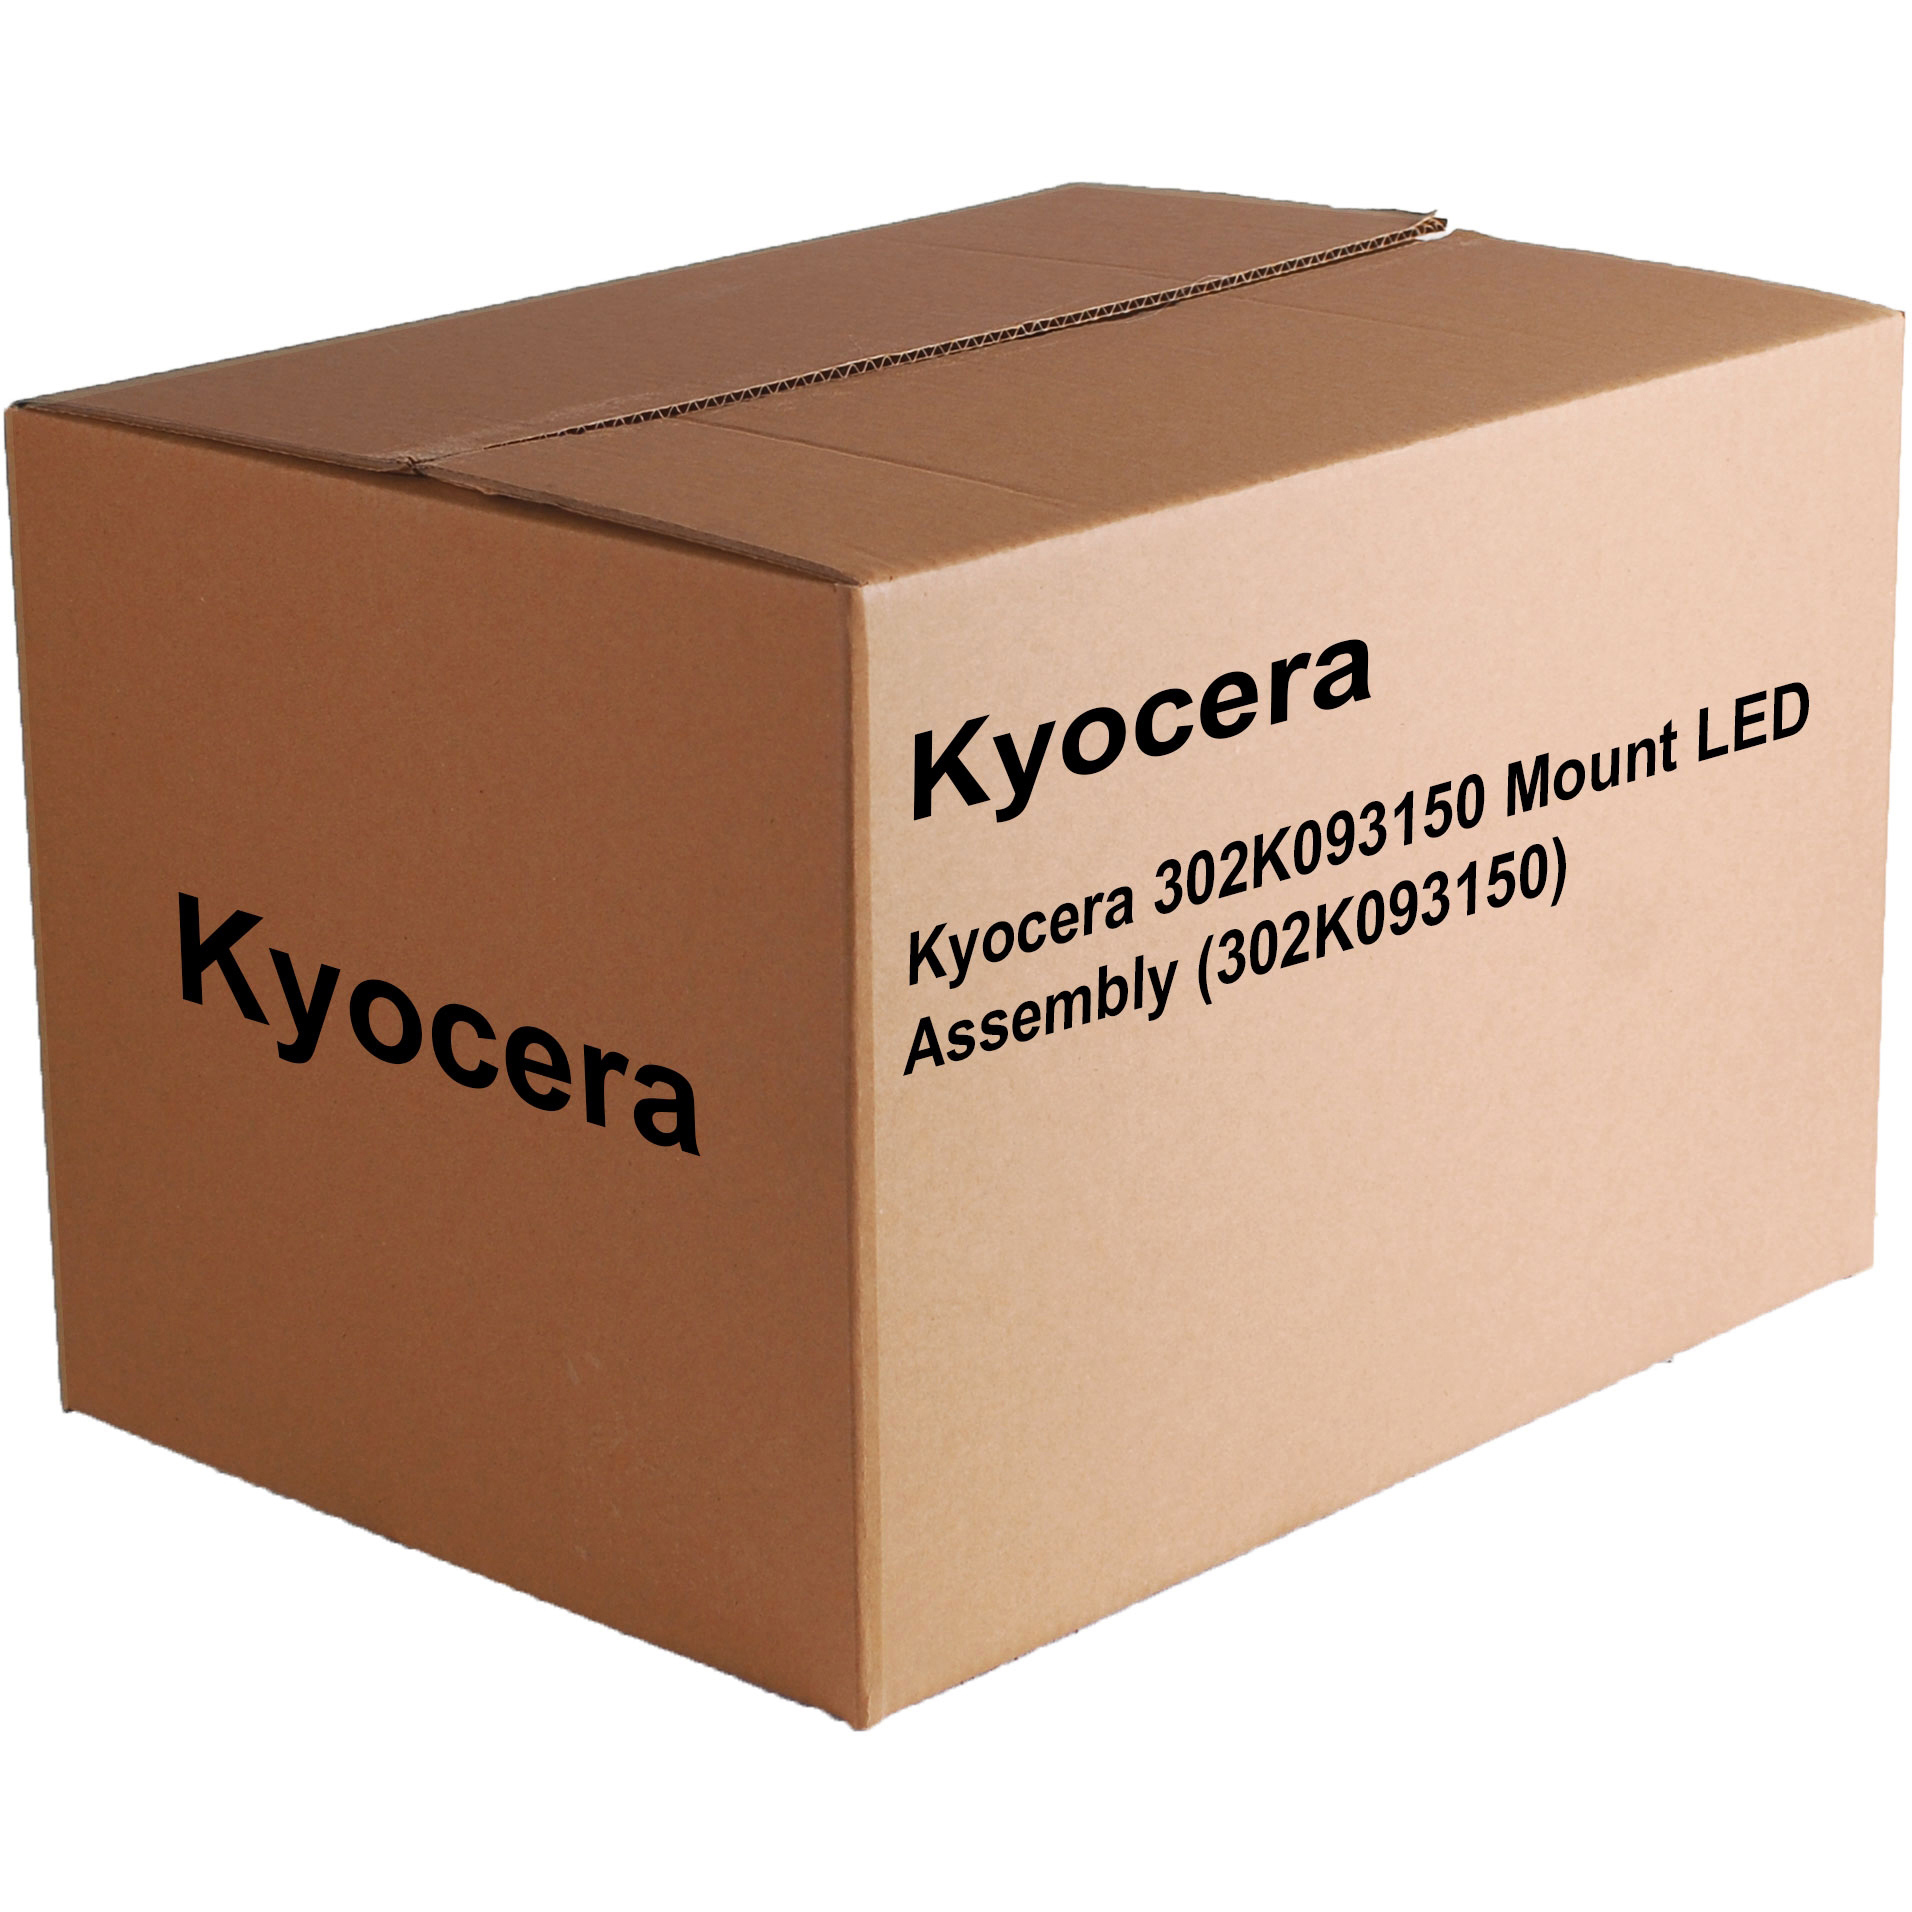 Original Kyocera 302K093150 Mount LED Assembly (302K093150)